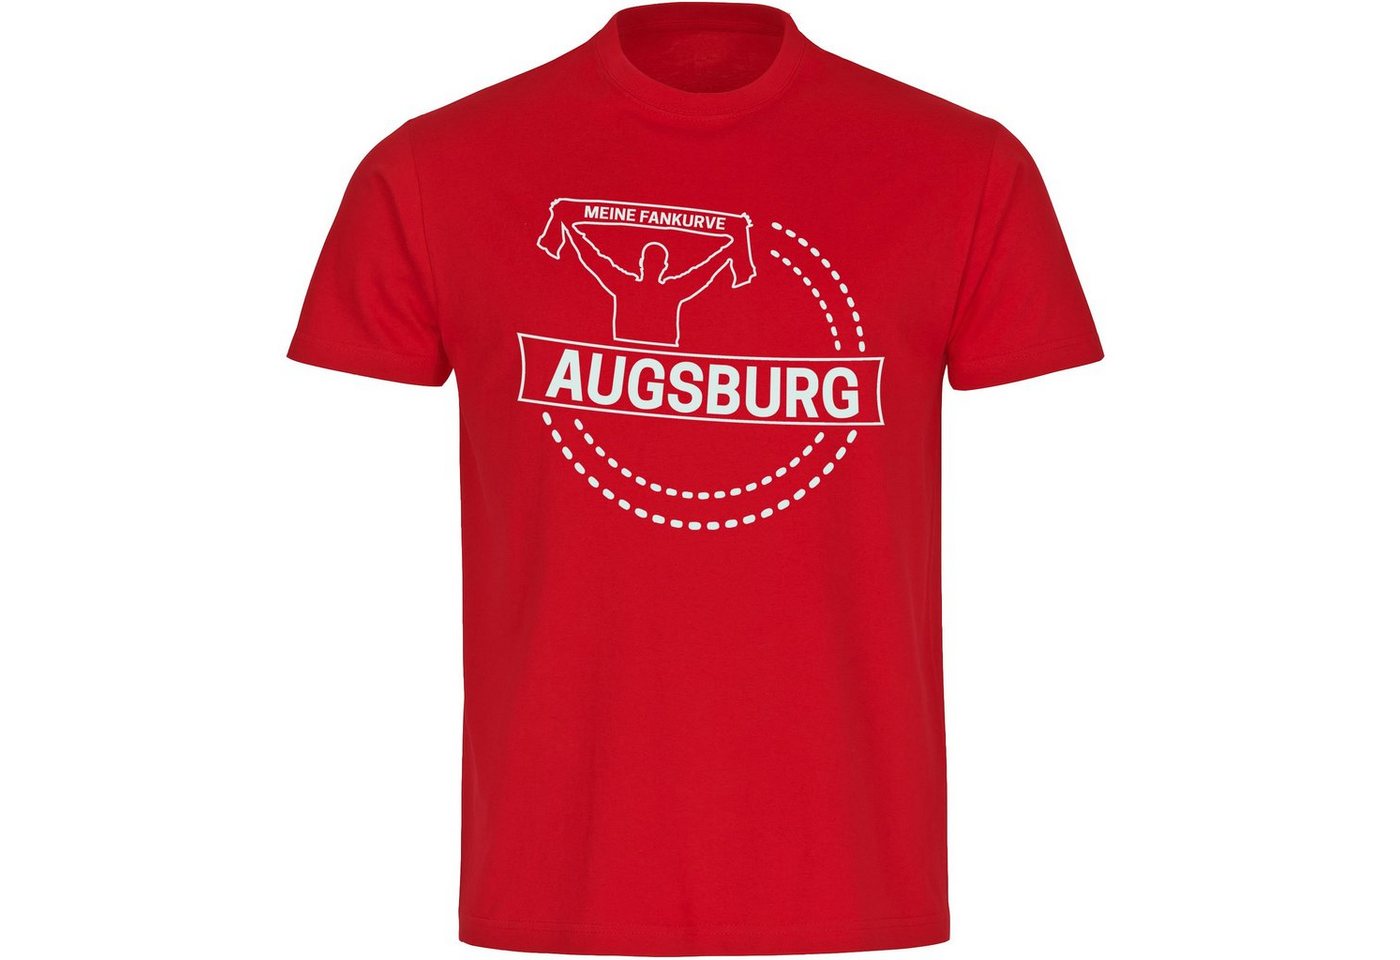 multifanshop T-Shirt Herren Augsburg - Meine Fankurve - Männer von multifanshop